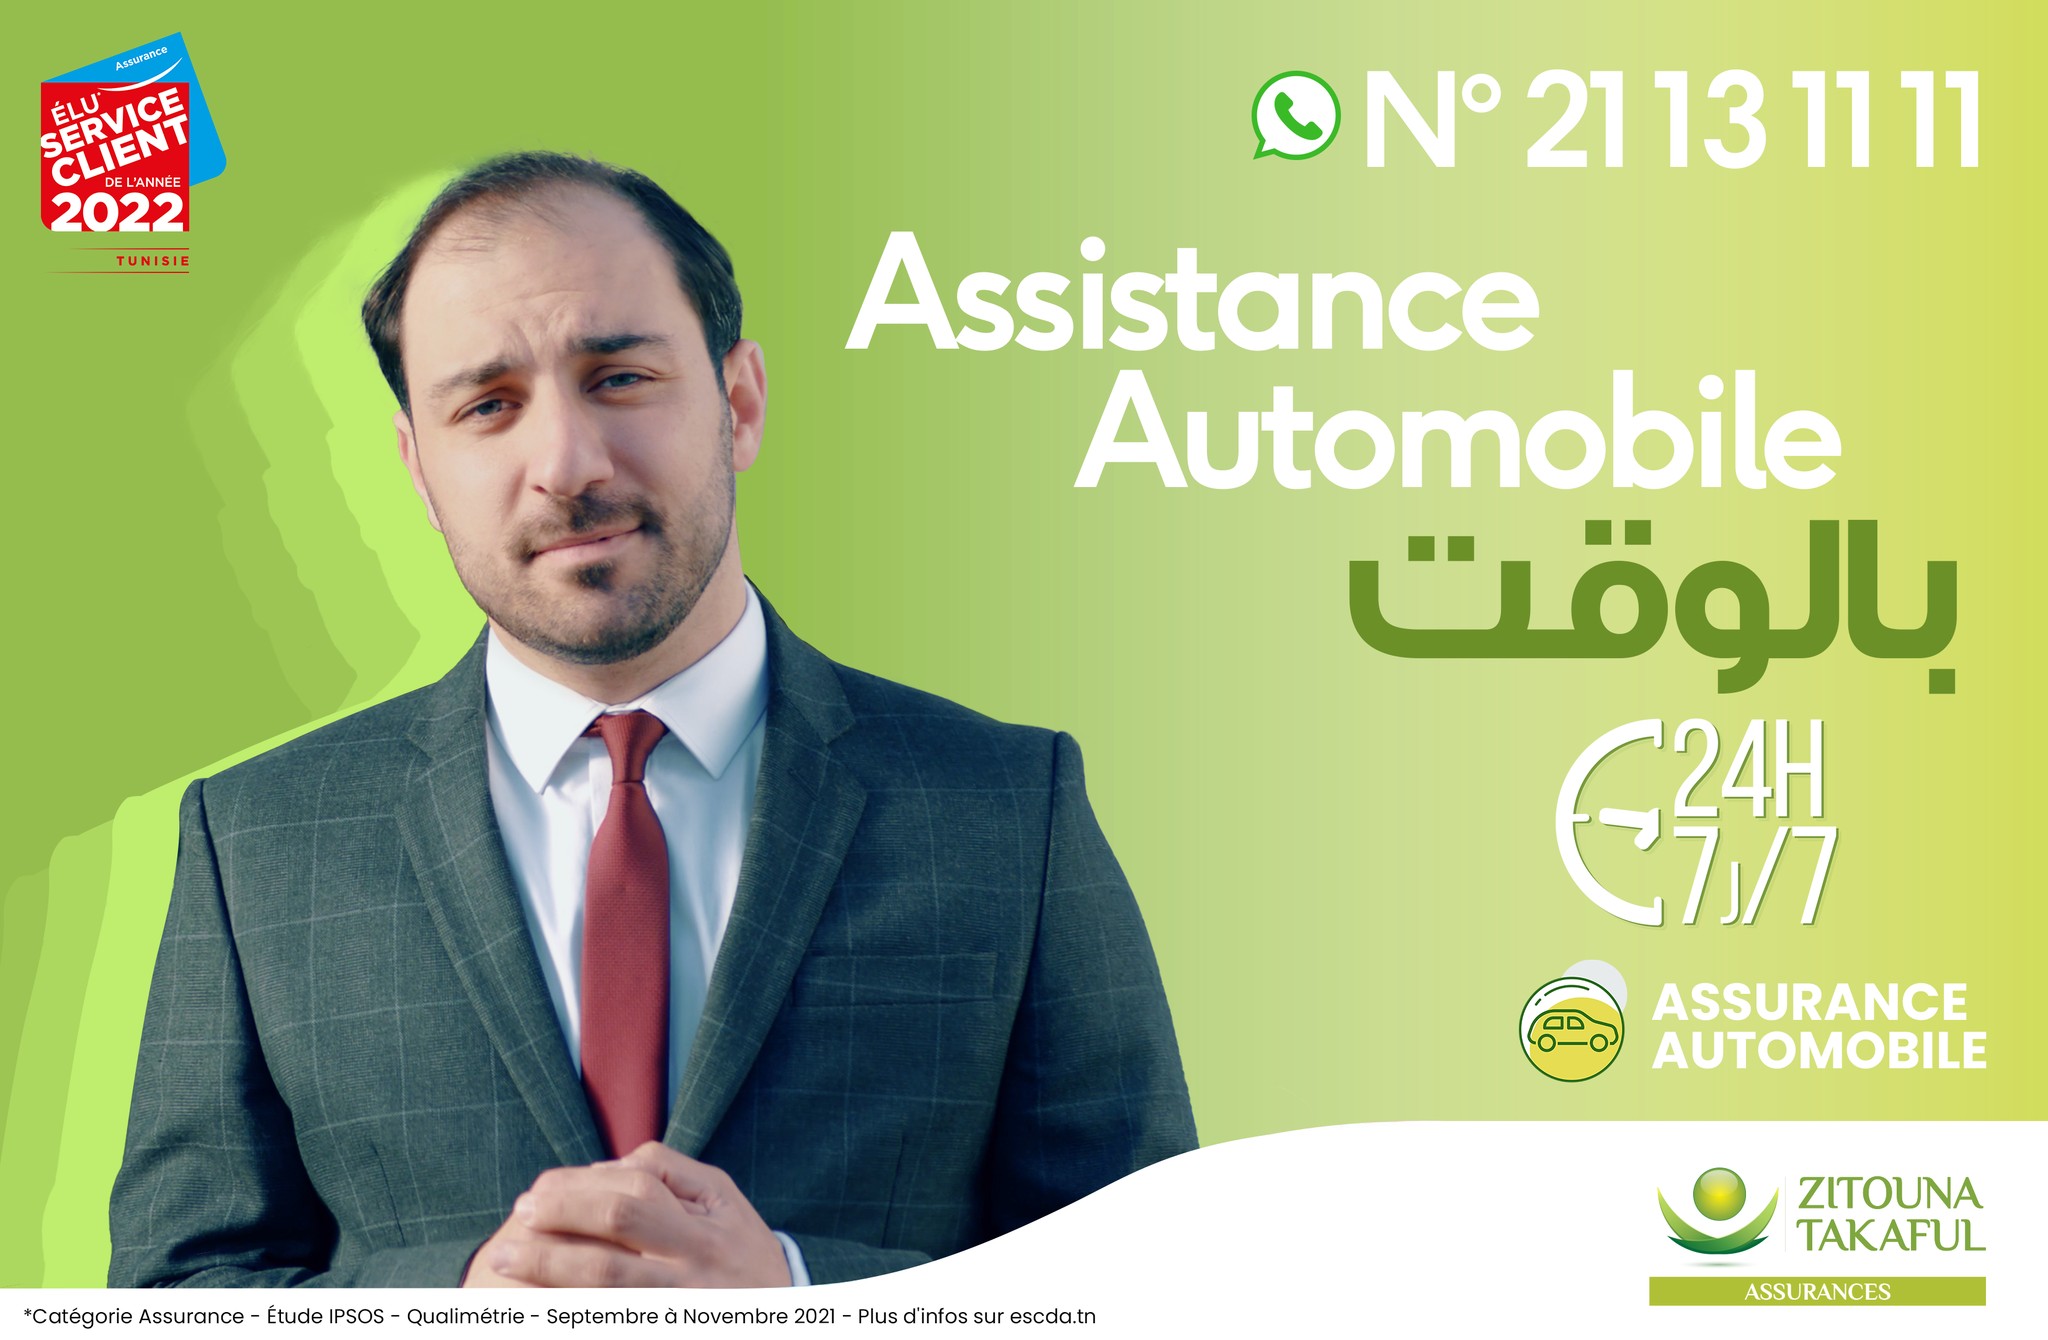  Assurances ZITOUNA TAKAFUL lance sa nouvelle campagne de communication _Assurances Automobile